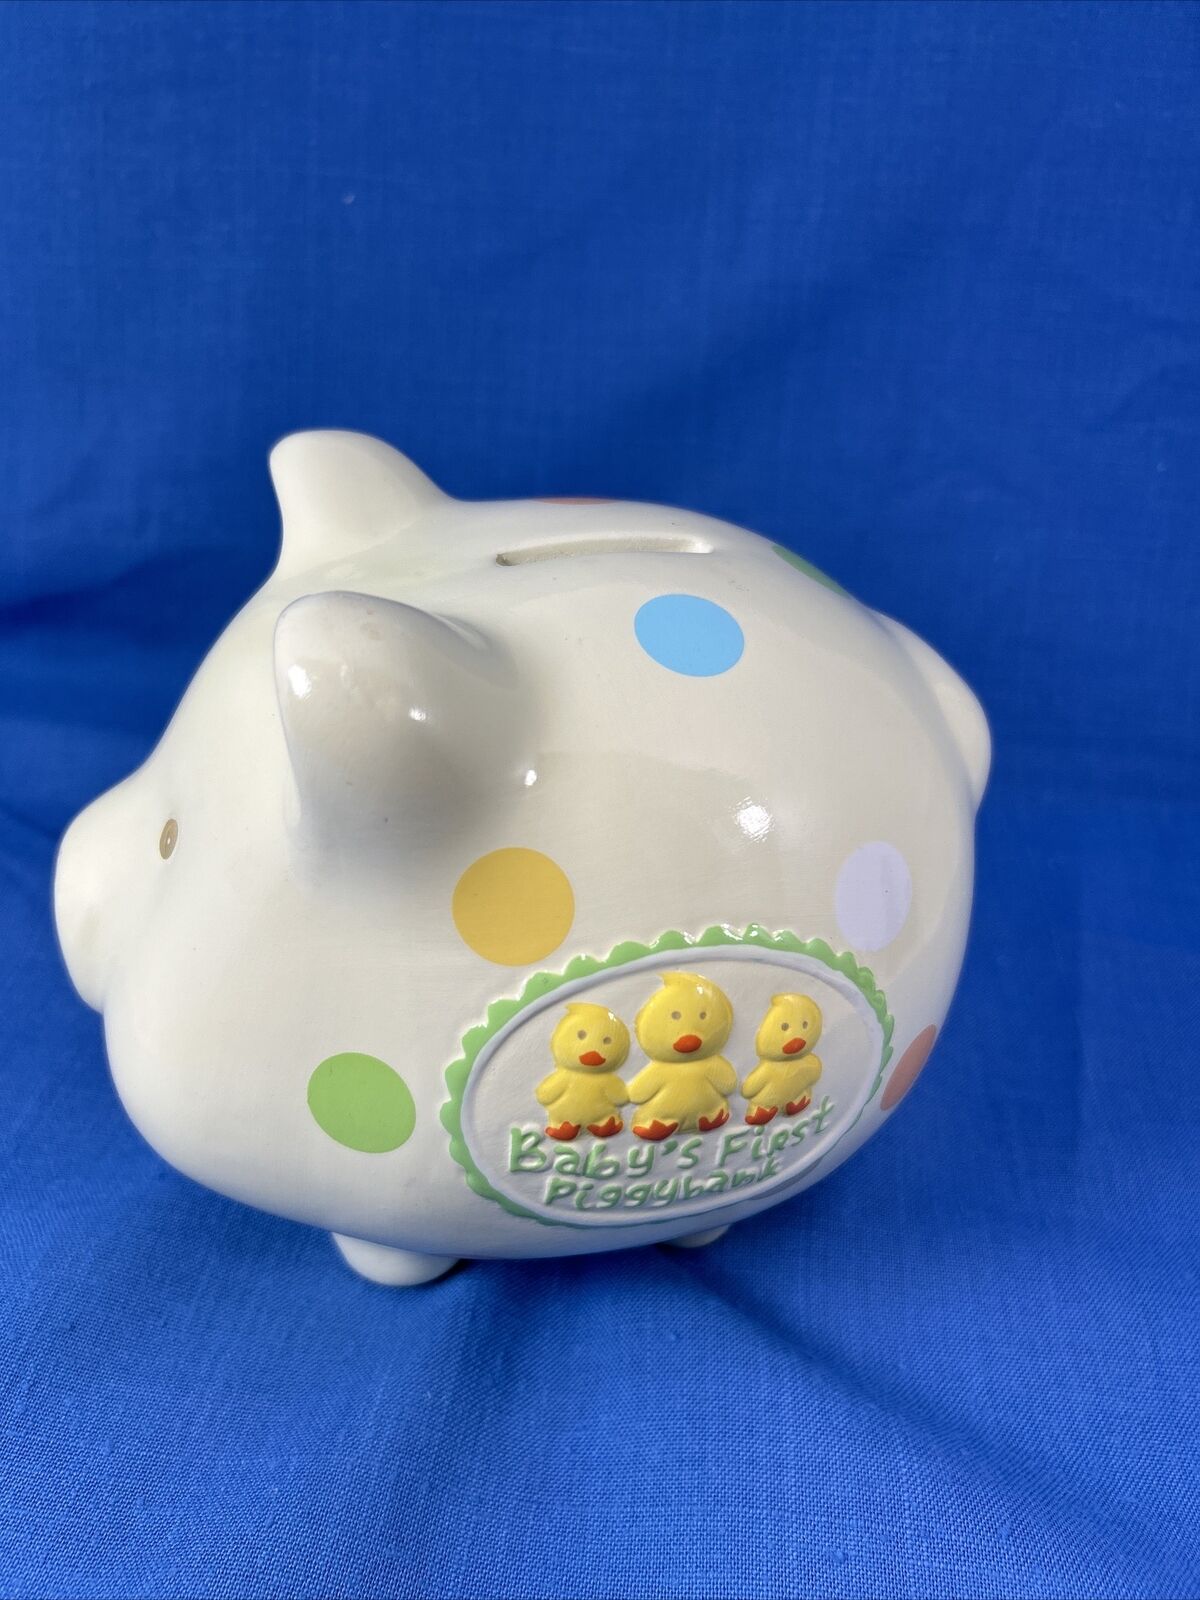 Baby Essentials My First Piggy Bank, 2010 A D Hutton Polka Dots /Ducks 7 X 6 X5”